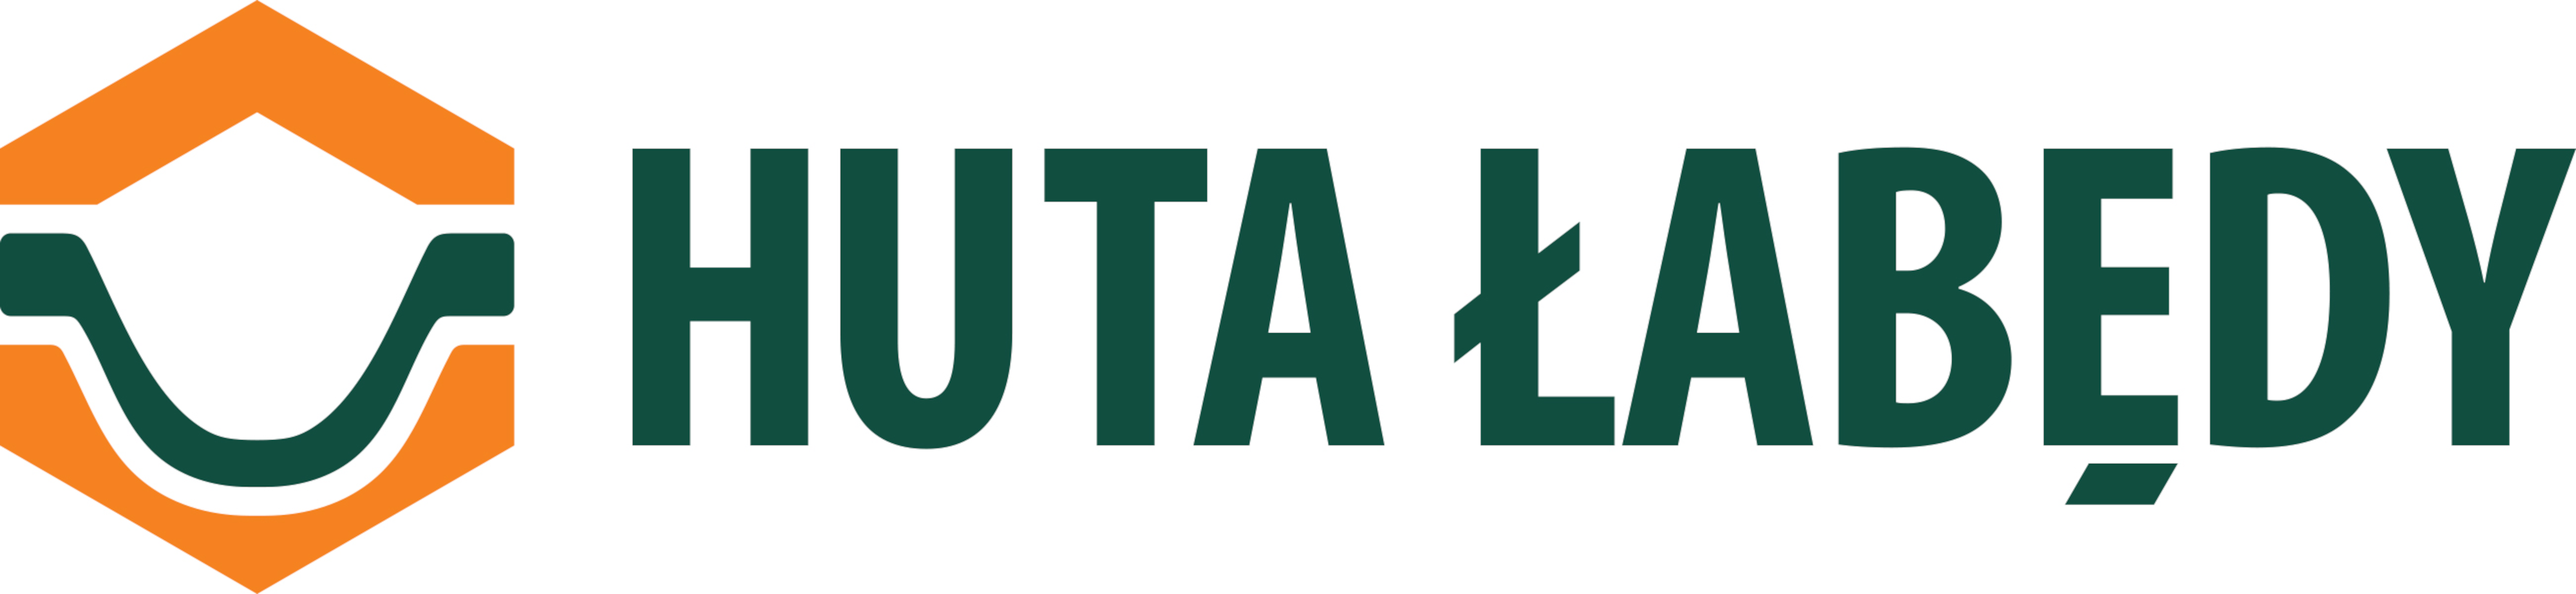 Huta-Labedy-logo-wersja-podst-kolor2